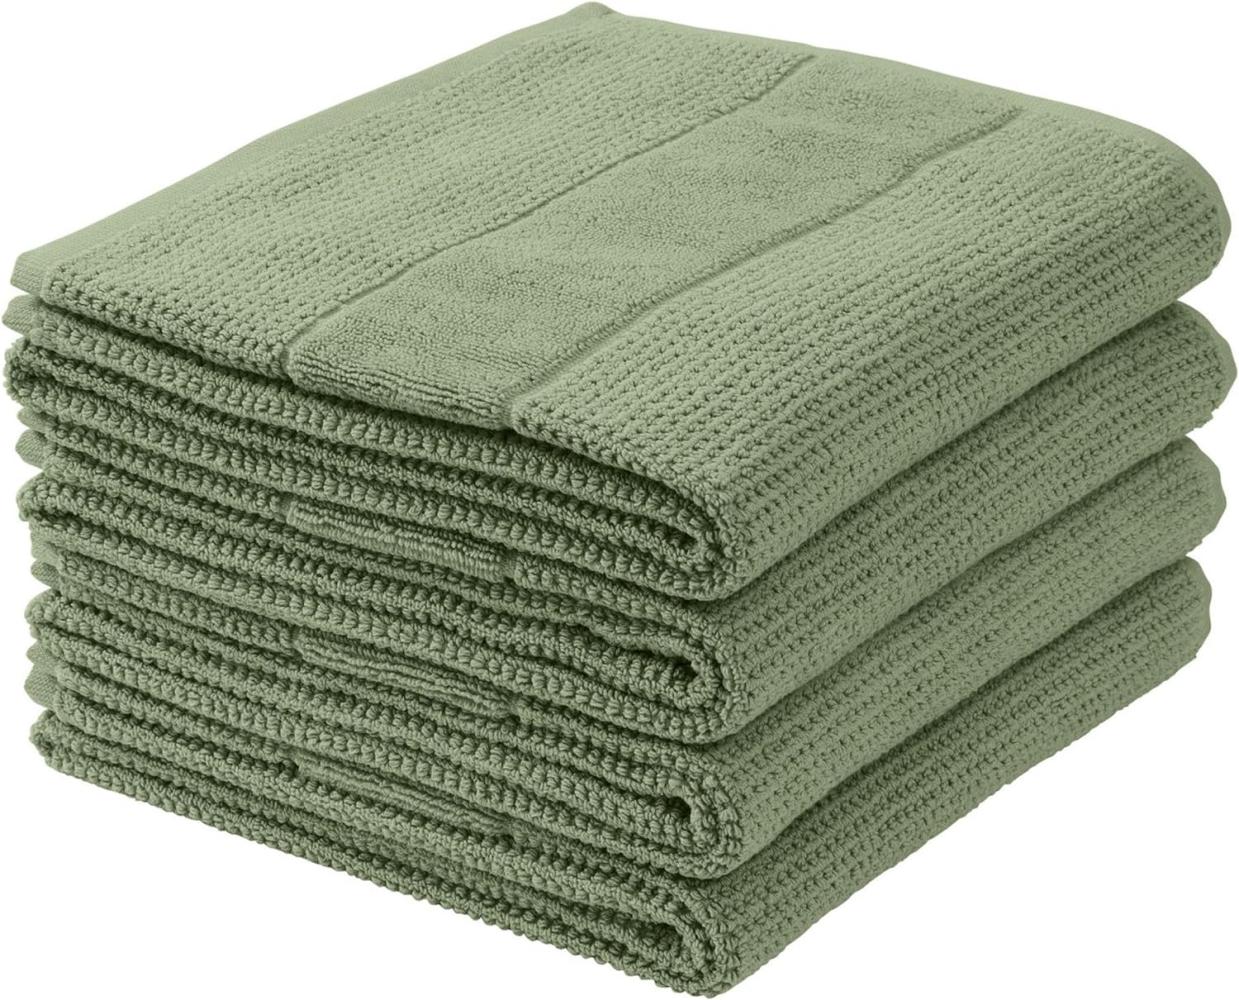 Schiesser Handtücher Turin im 4er Set aus 100% Baumwolle, nachhaltig und fair produziert, Farbe:Salbei, Größe:50 cm x 100 cm Bild 1